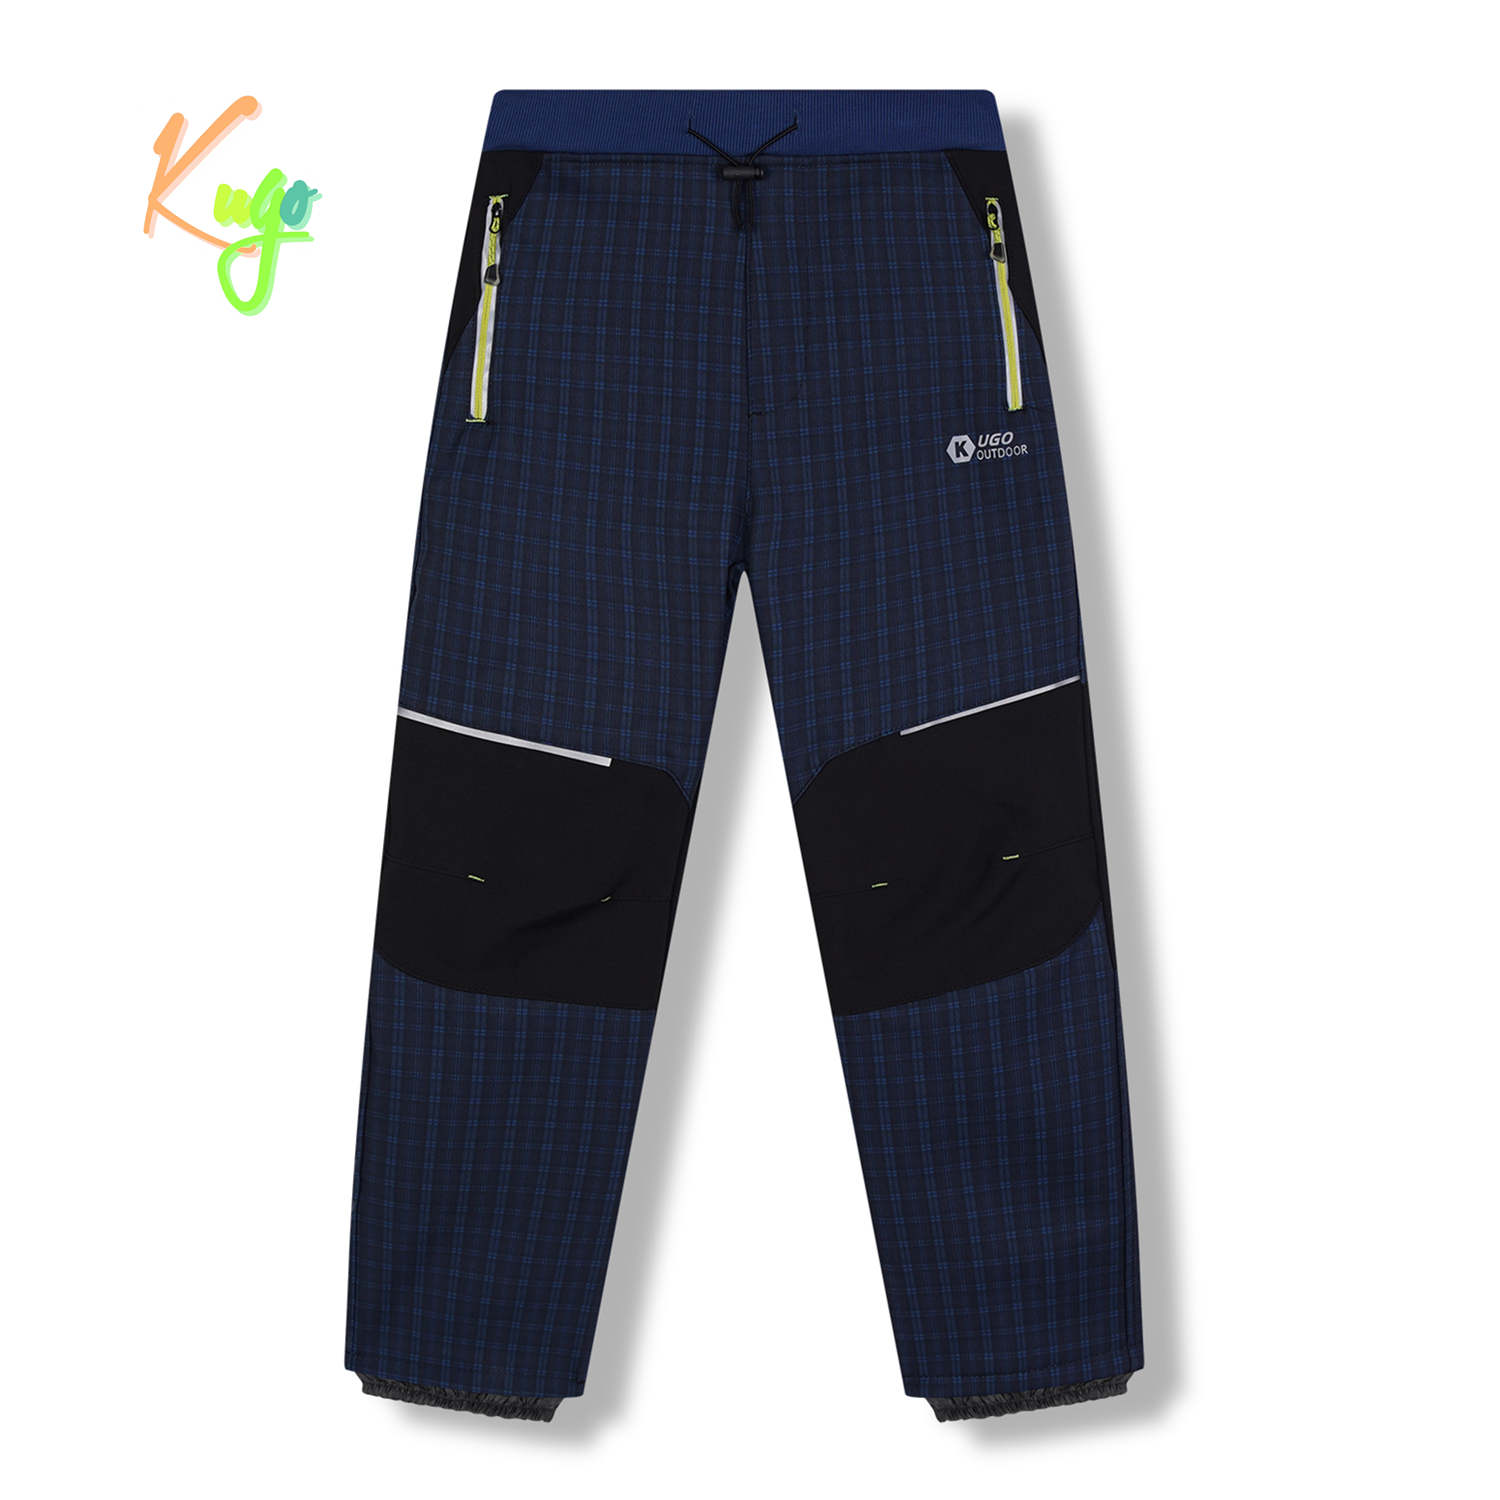 Chlapecké softshellové kalhoty, zateplené - KUGO HK5631, modrá / signální zipy Barva: Modrá, Velikost: 134